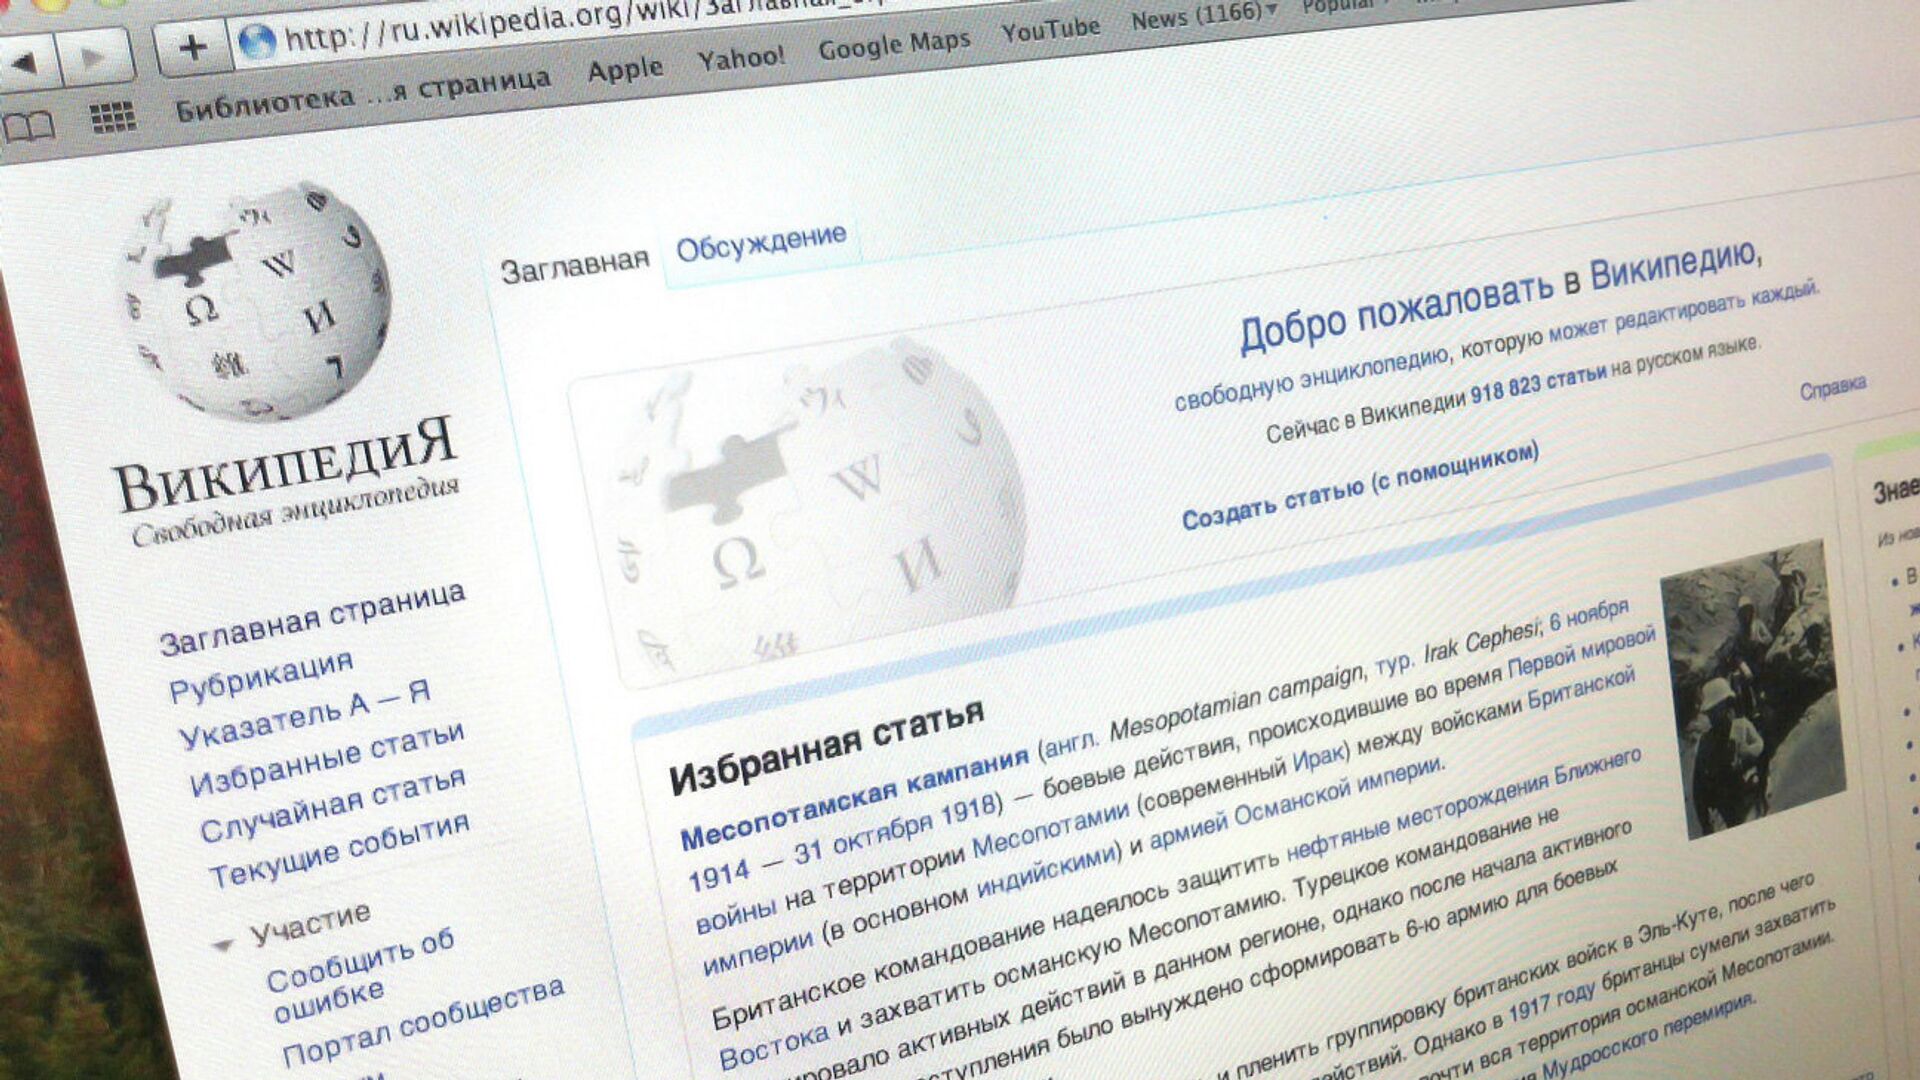 Https ru wikipedia org w index php. Статья Википедия. Википедия свободная энциклопедия. Википедия. Wiki.